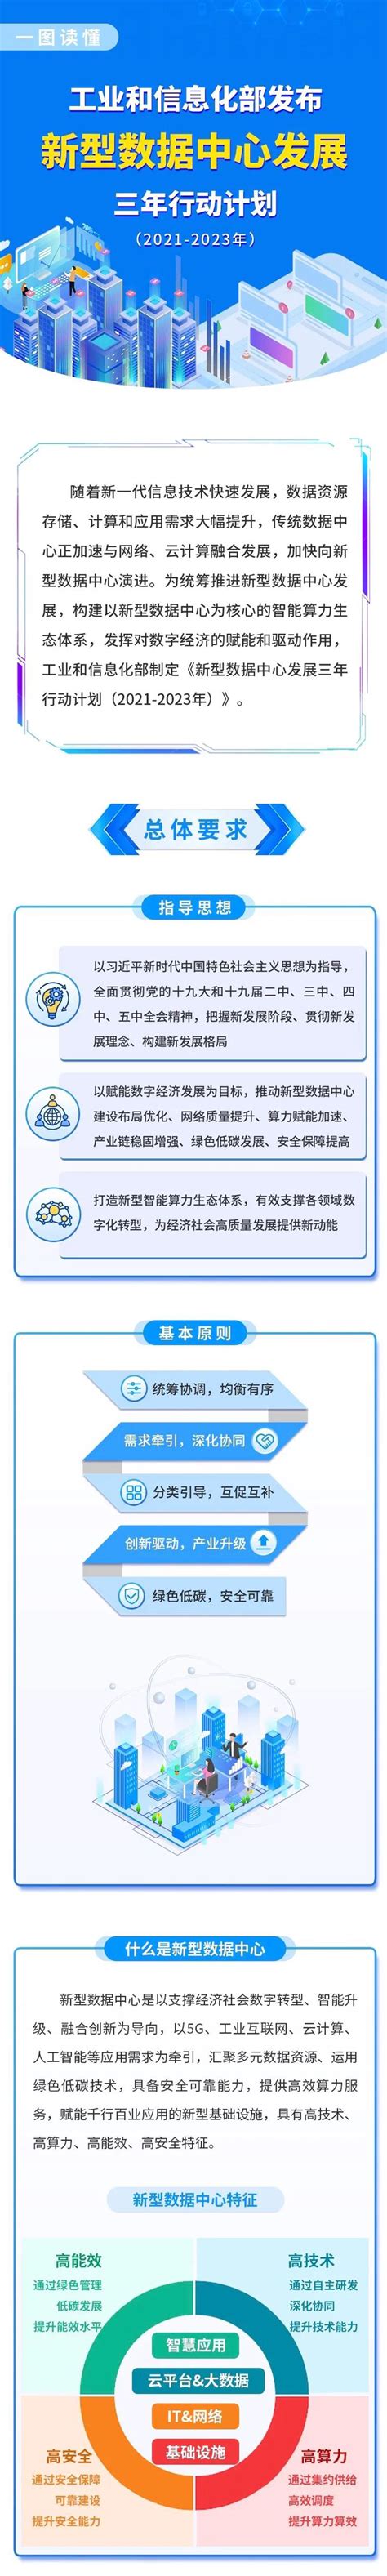 提升行政执法质量三年行动计划党建展板版面图片下载_红动中国